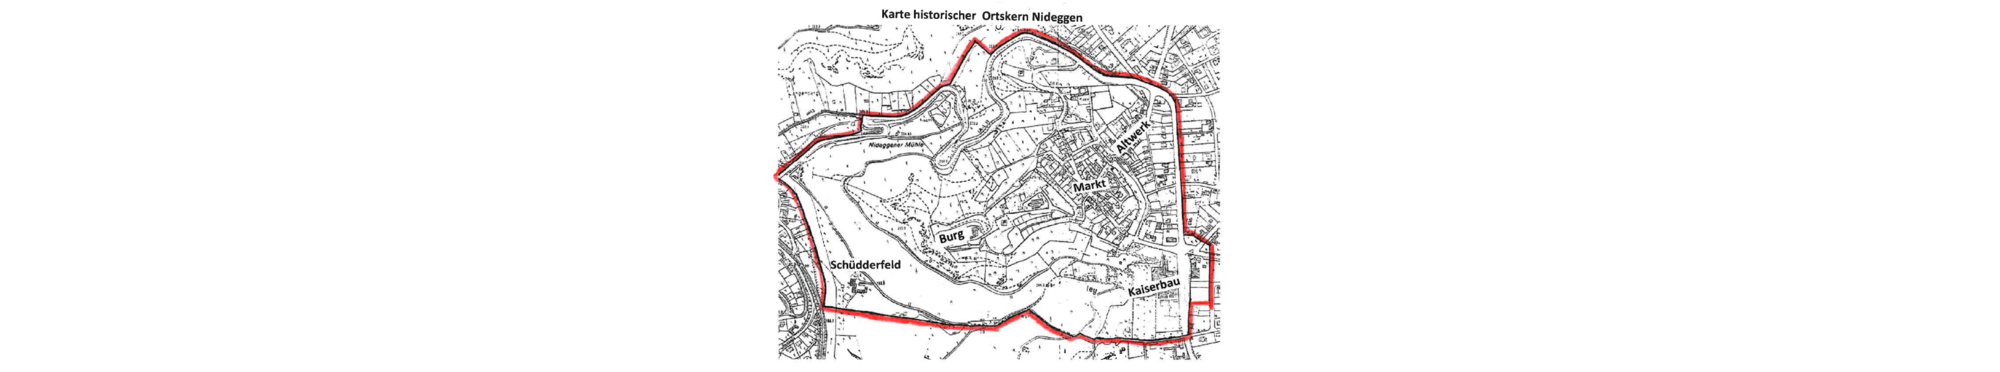 Karte historischer Stadtkern.